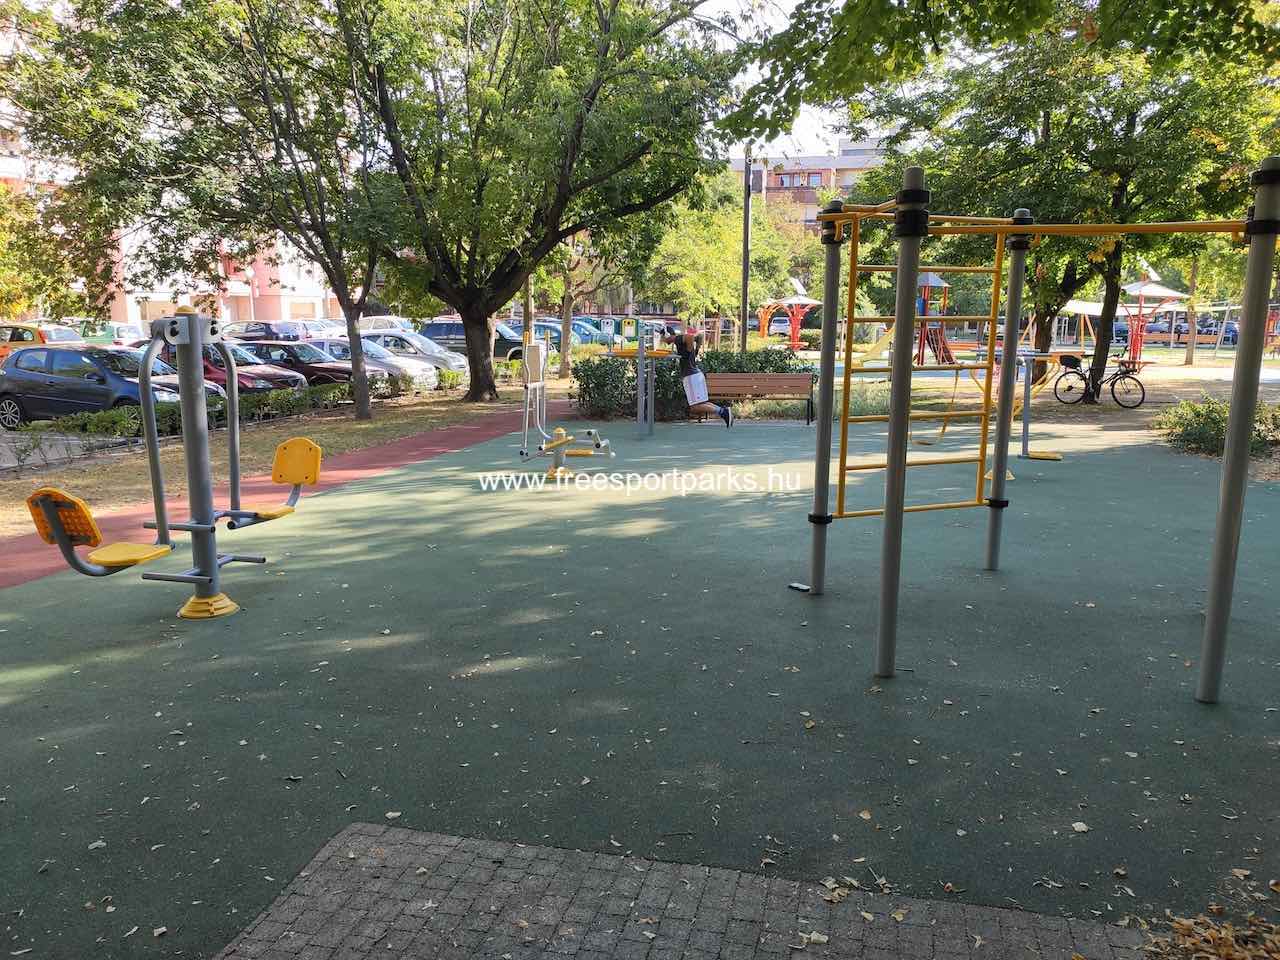 fitneszpark másik oldala - Say Ferenc utcai játszótér, Siófok - Free Sport Parks blog